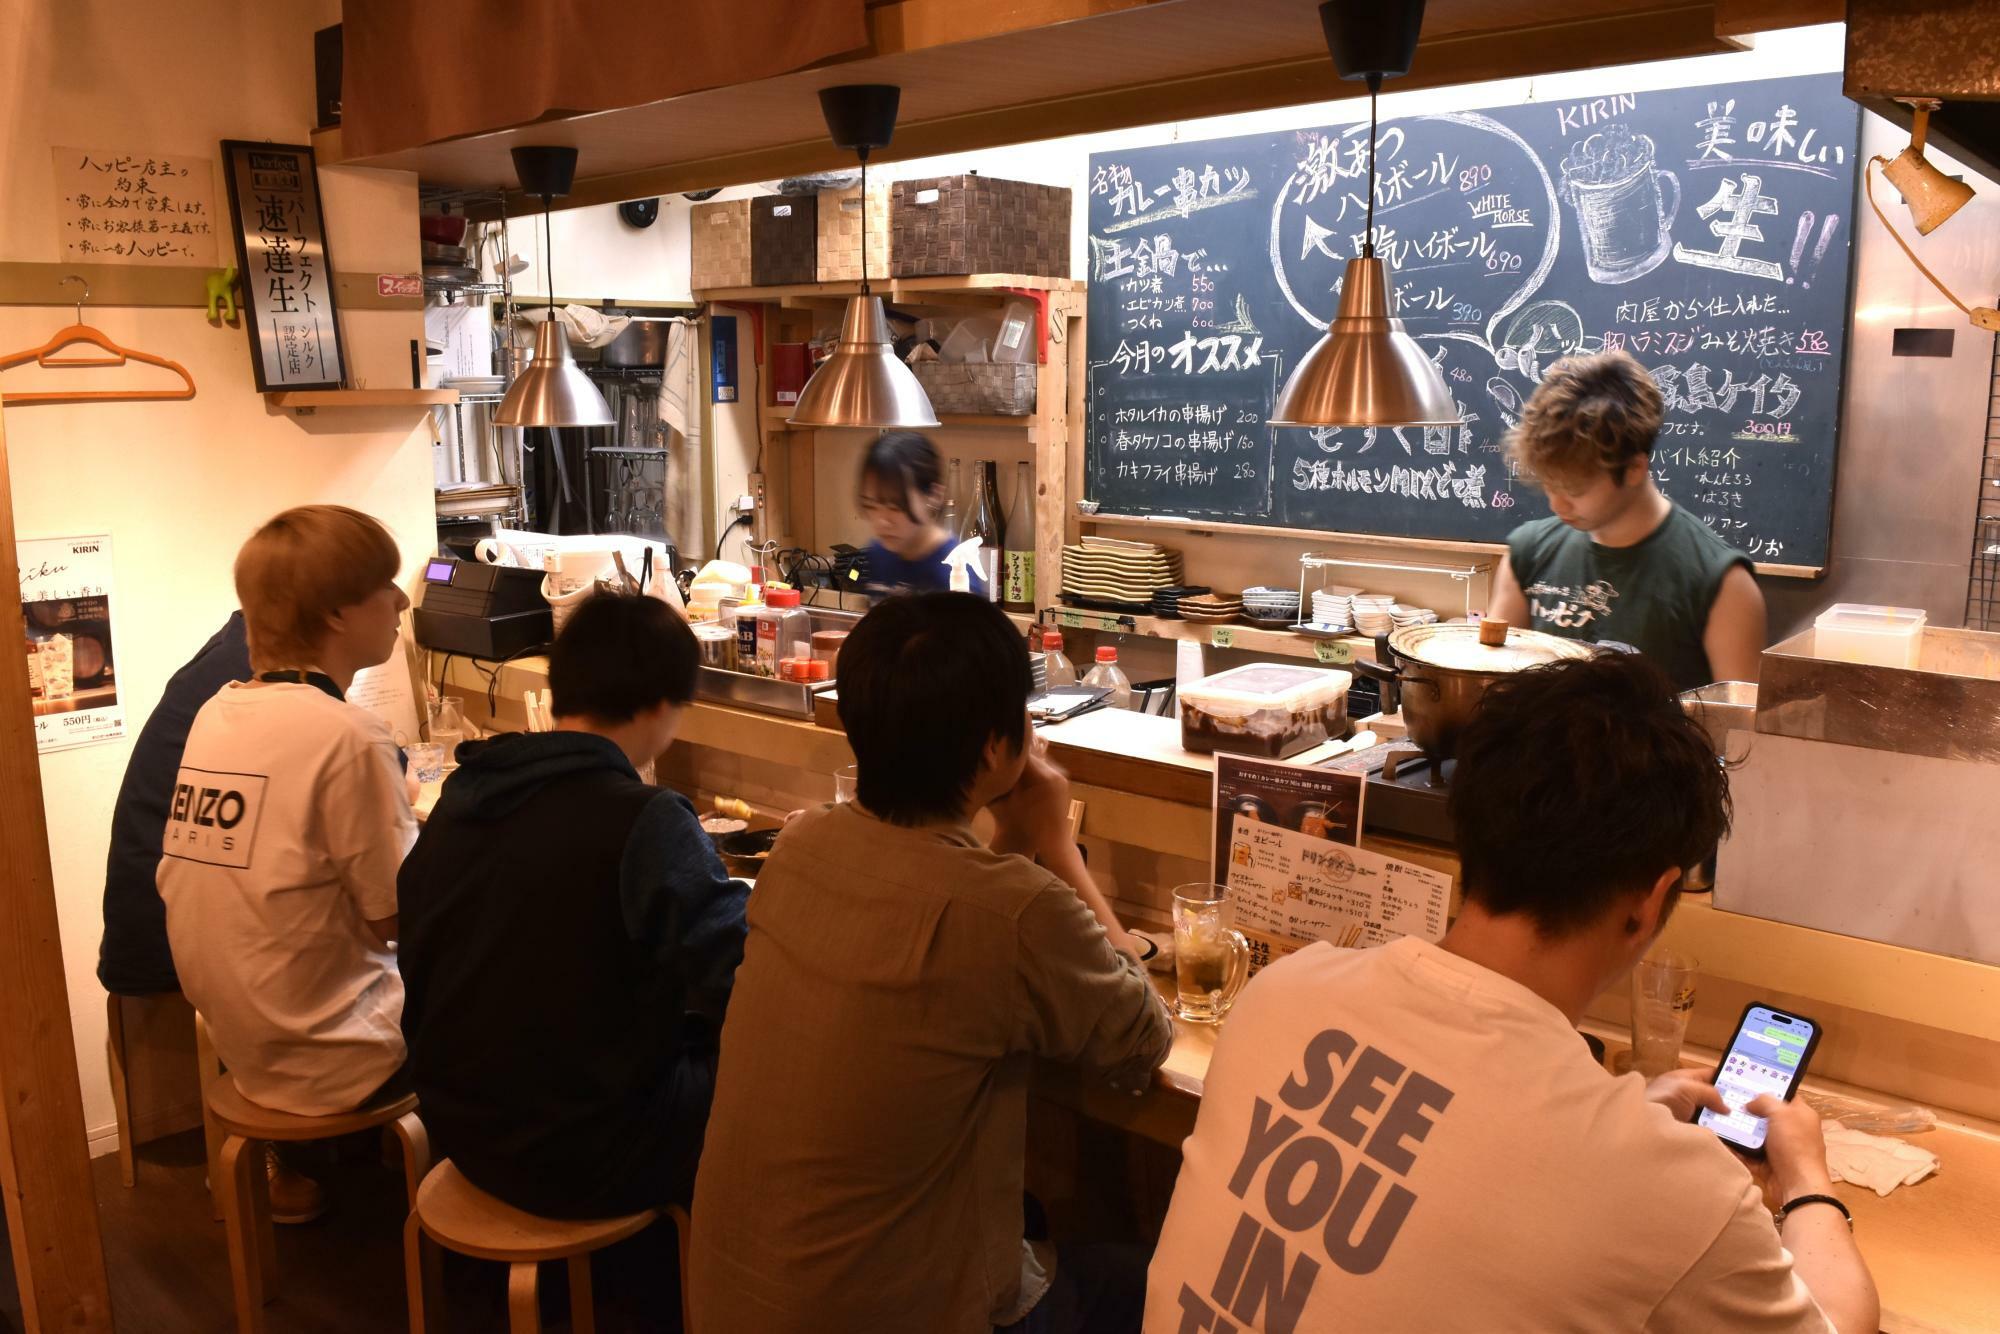 「串カツと煮込み ハッピー」はカレー串カツが目玉。店長の浅井さんはじめスタッフが若いこともあり、お客も学生ら若者が多い